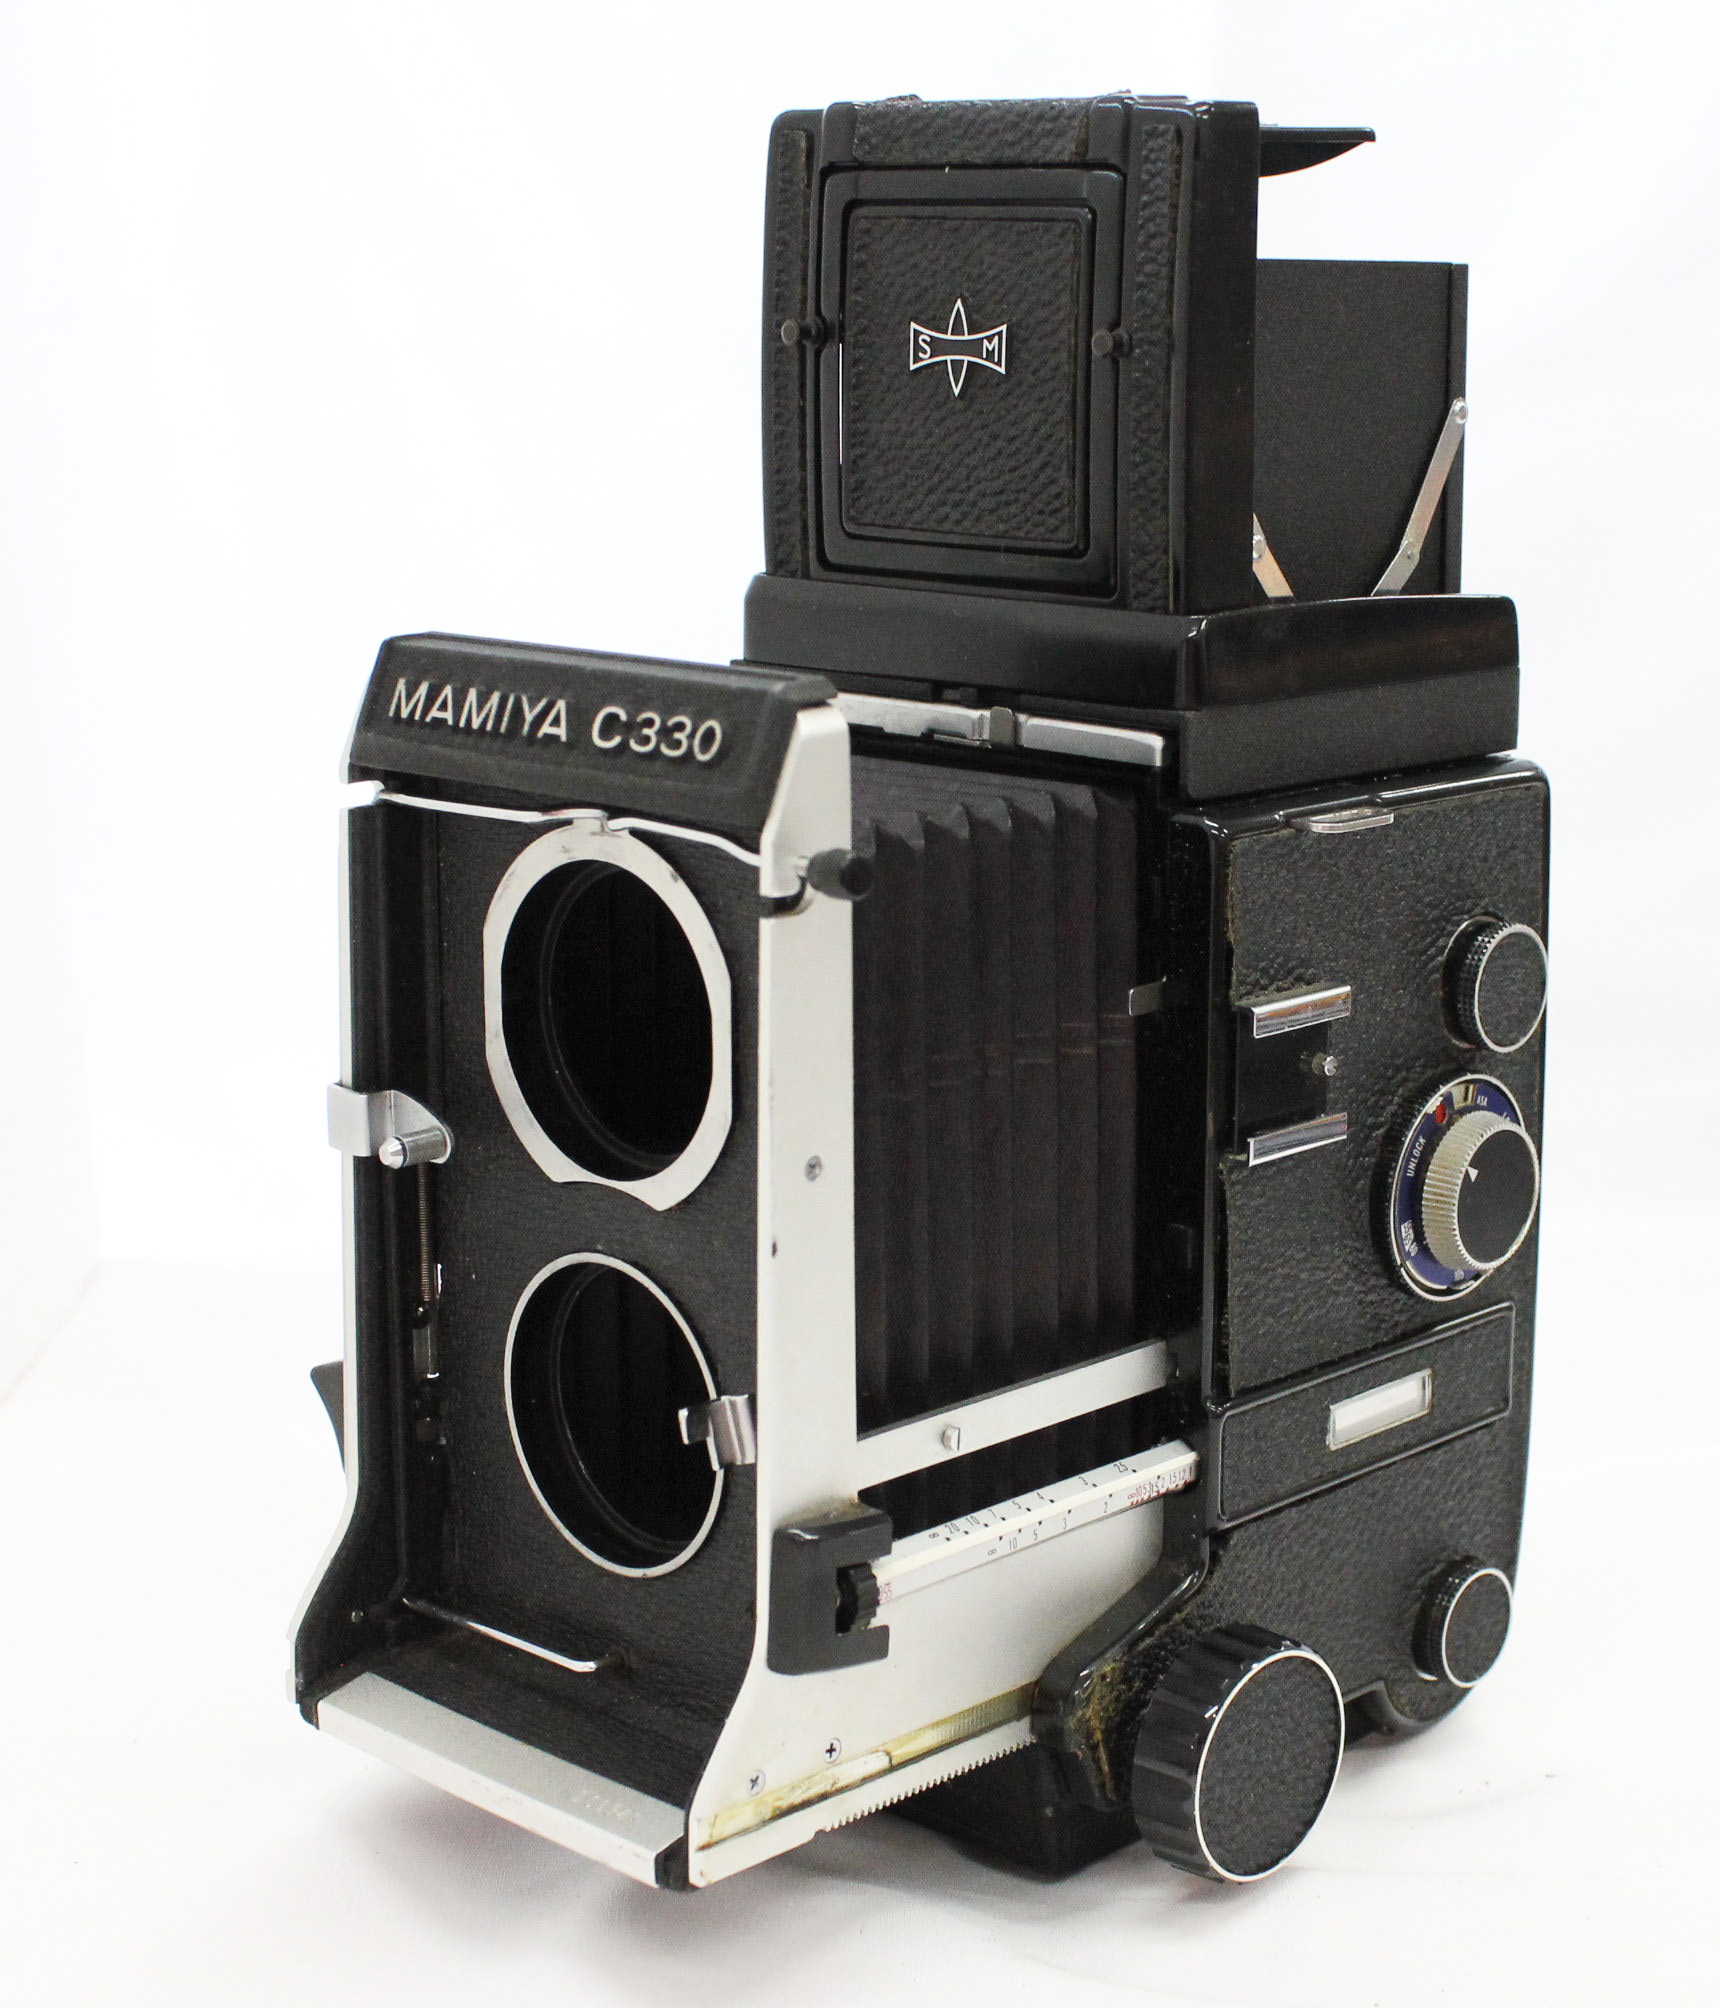  Mamiya C330 Professional Camera with Mamiya-Sekor DS 105mm F3.5 Blue Dot Lens from Japan Photo 1